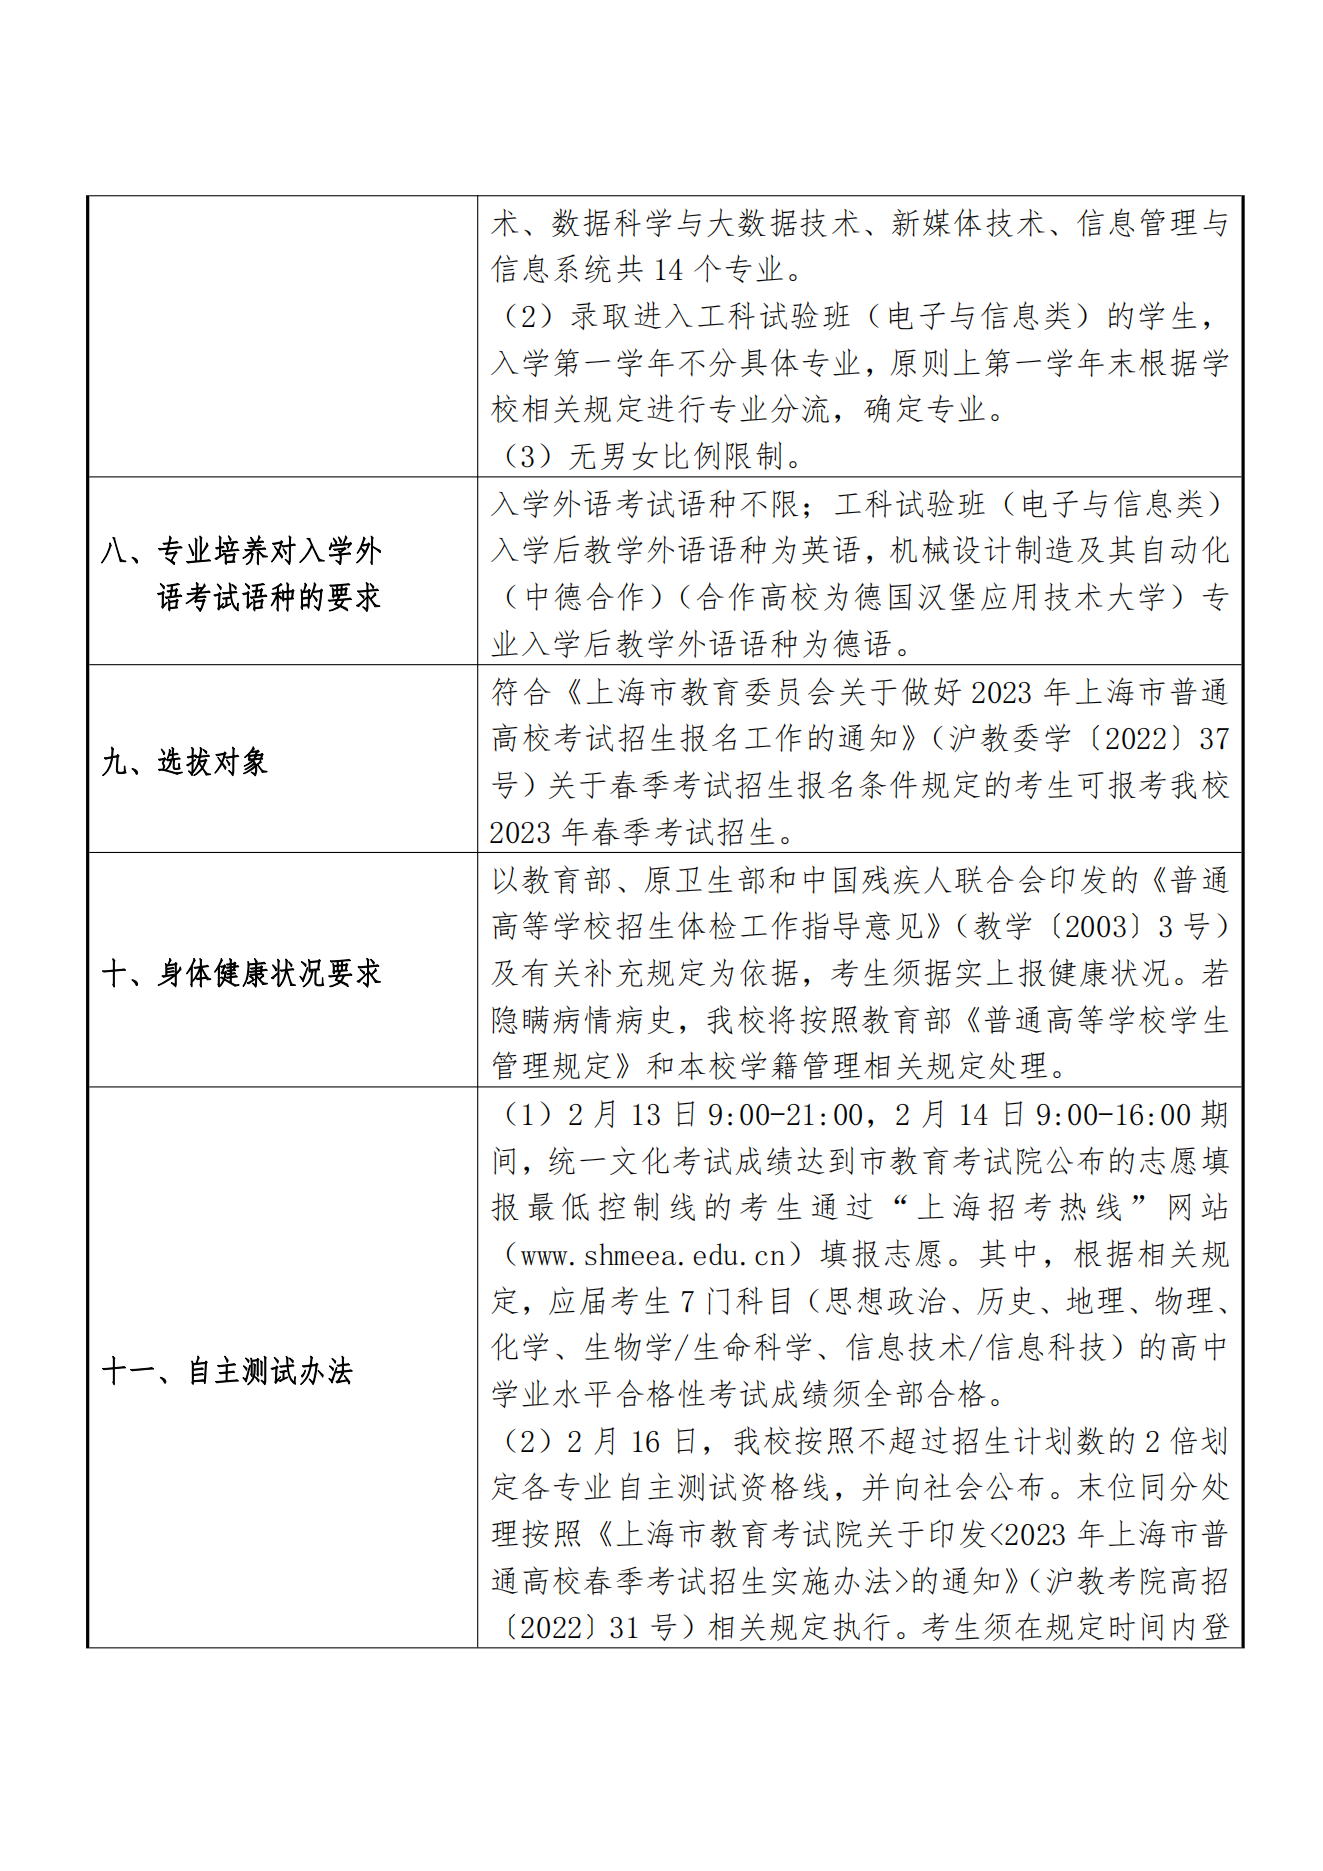 上海理工大学2023 年春季高考招生章程